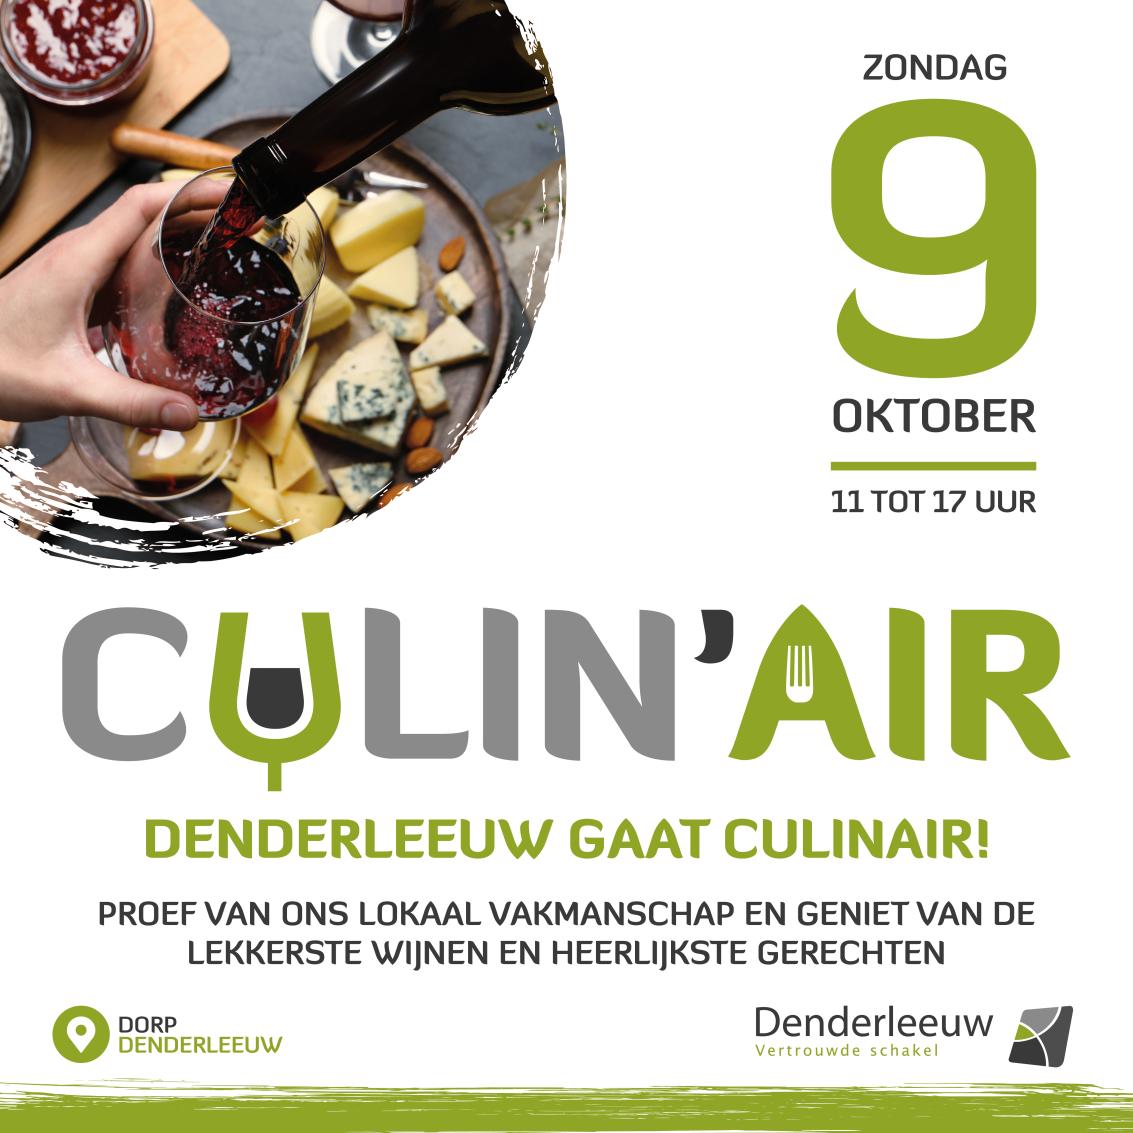 9 okt - Culin'air Denderleeuw - 9 oktober